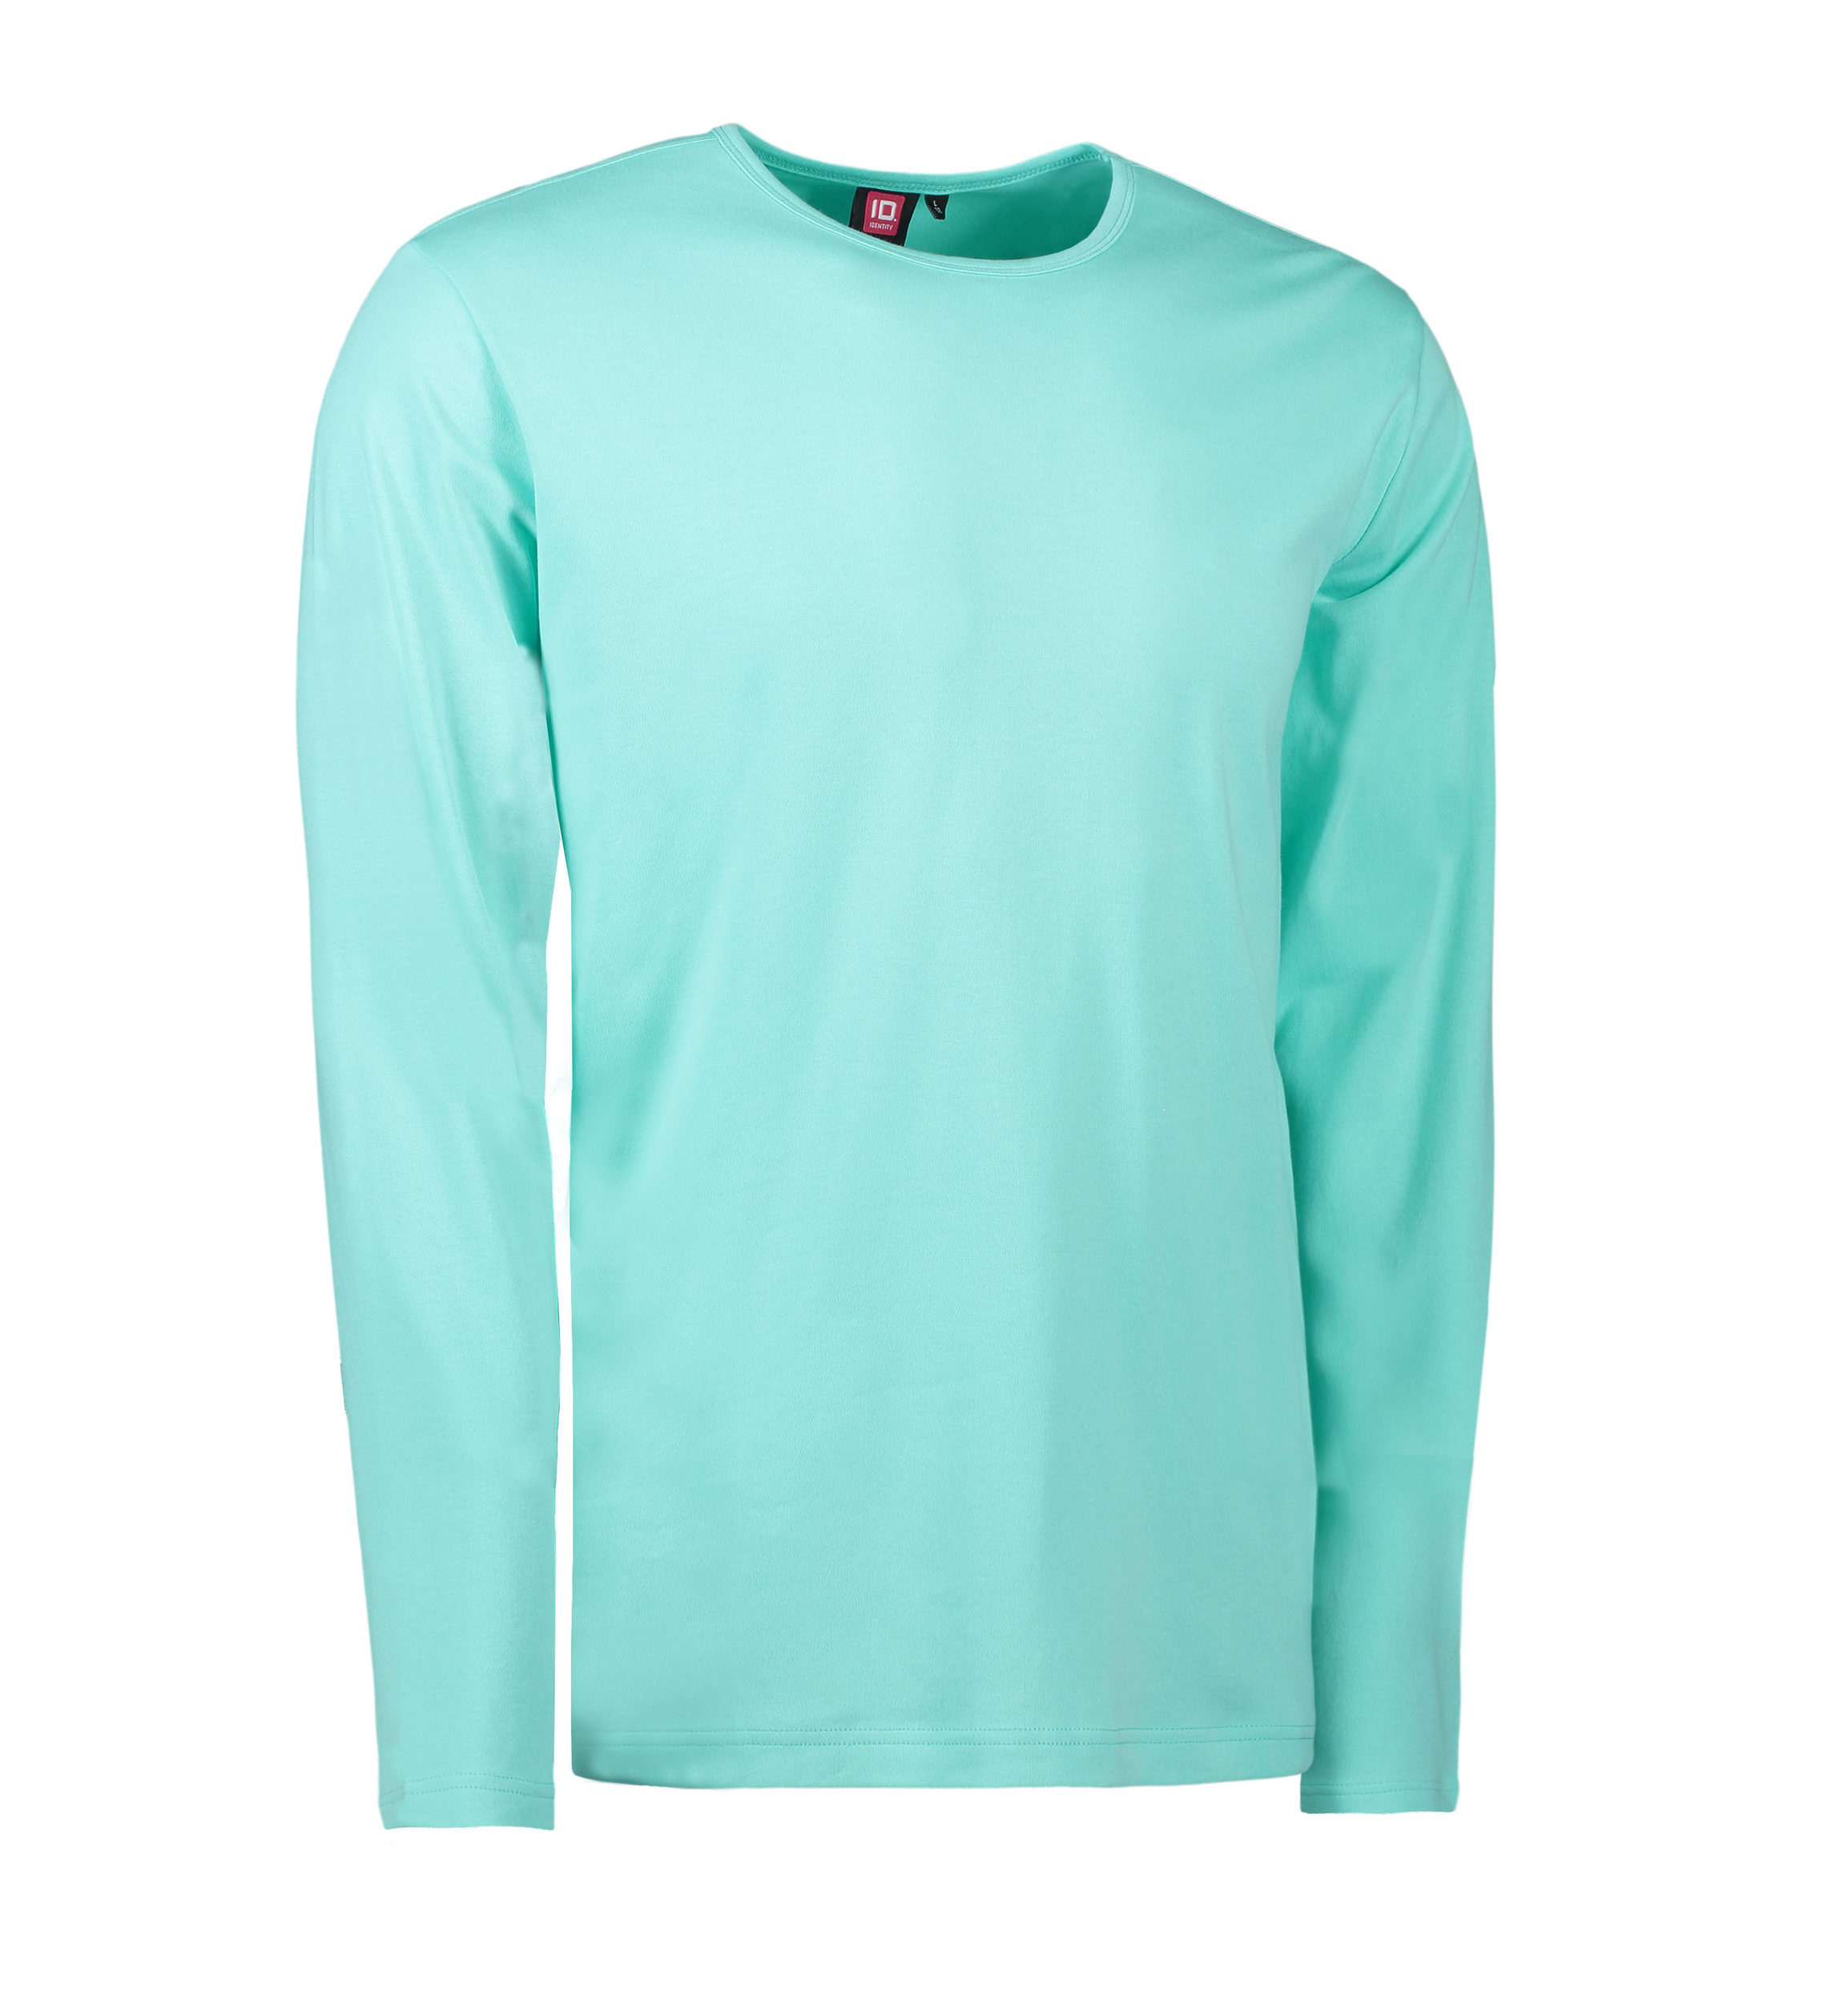 Se Mint farvet langærmet t-shirt til mænd - 3XL hos Sygeplejebutikken.dk